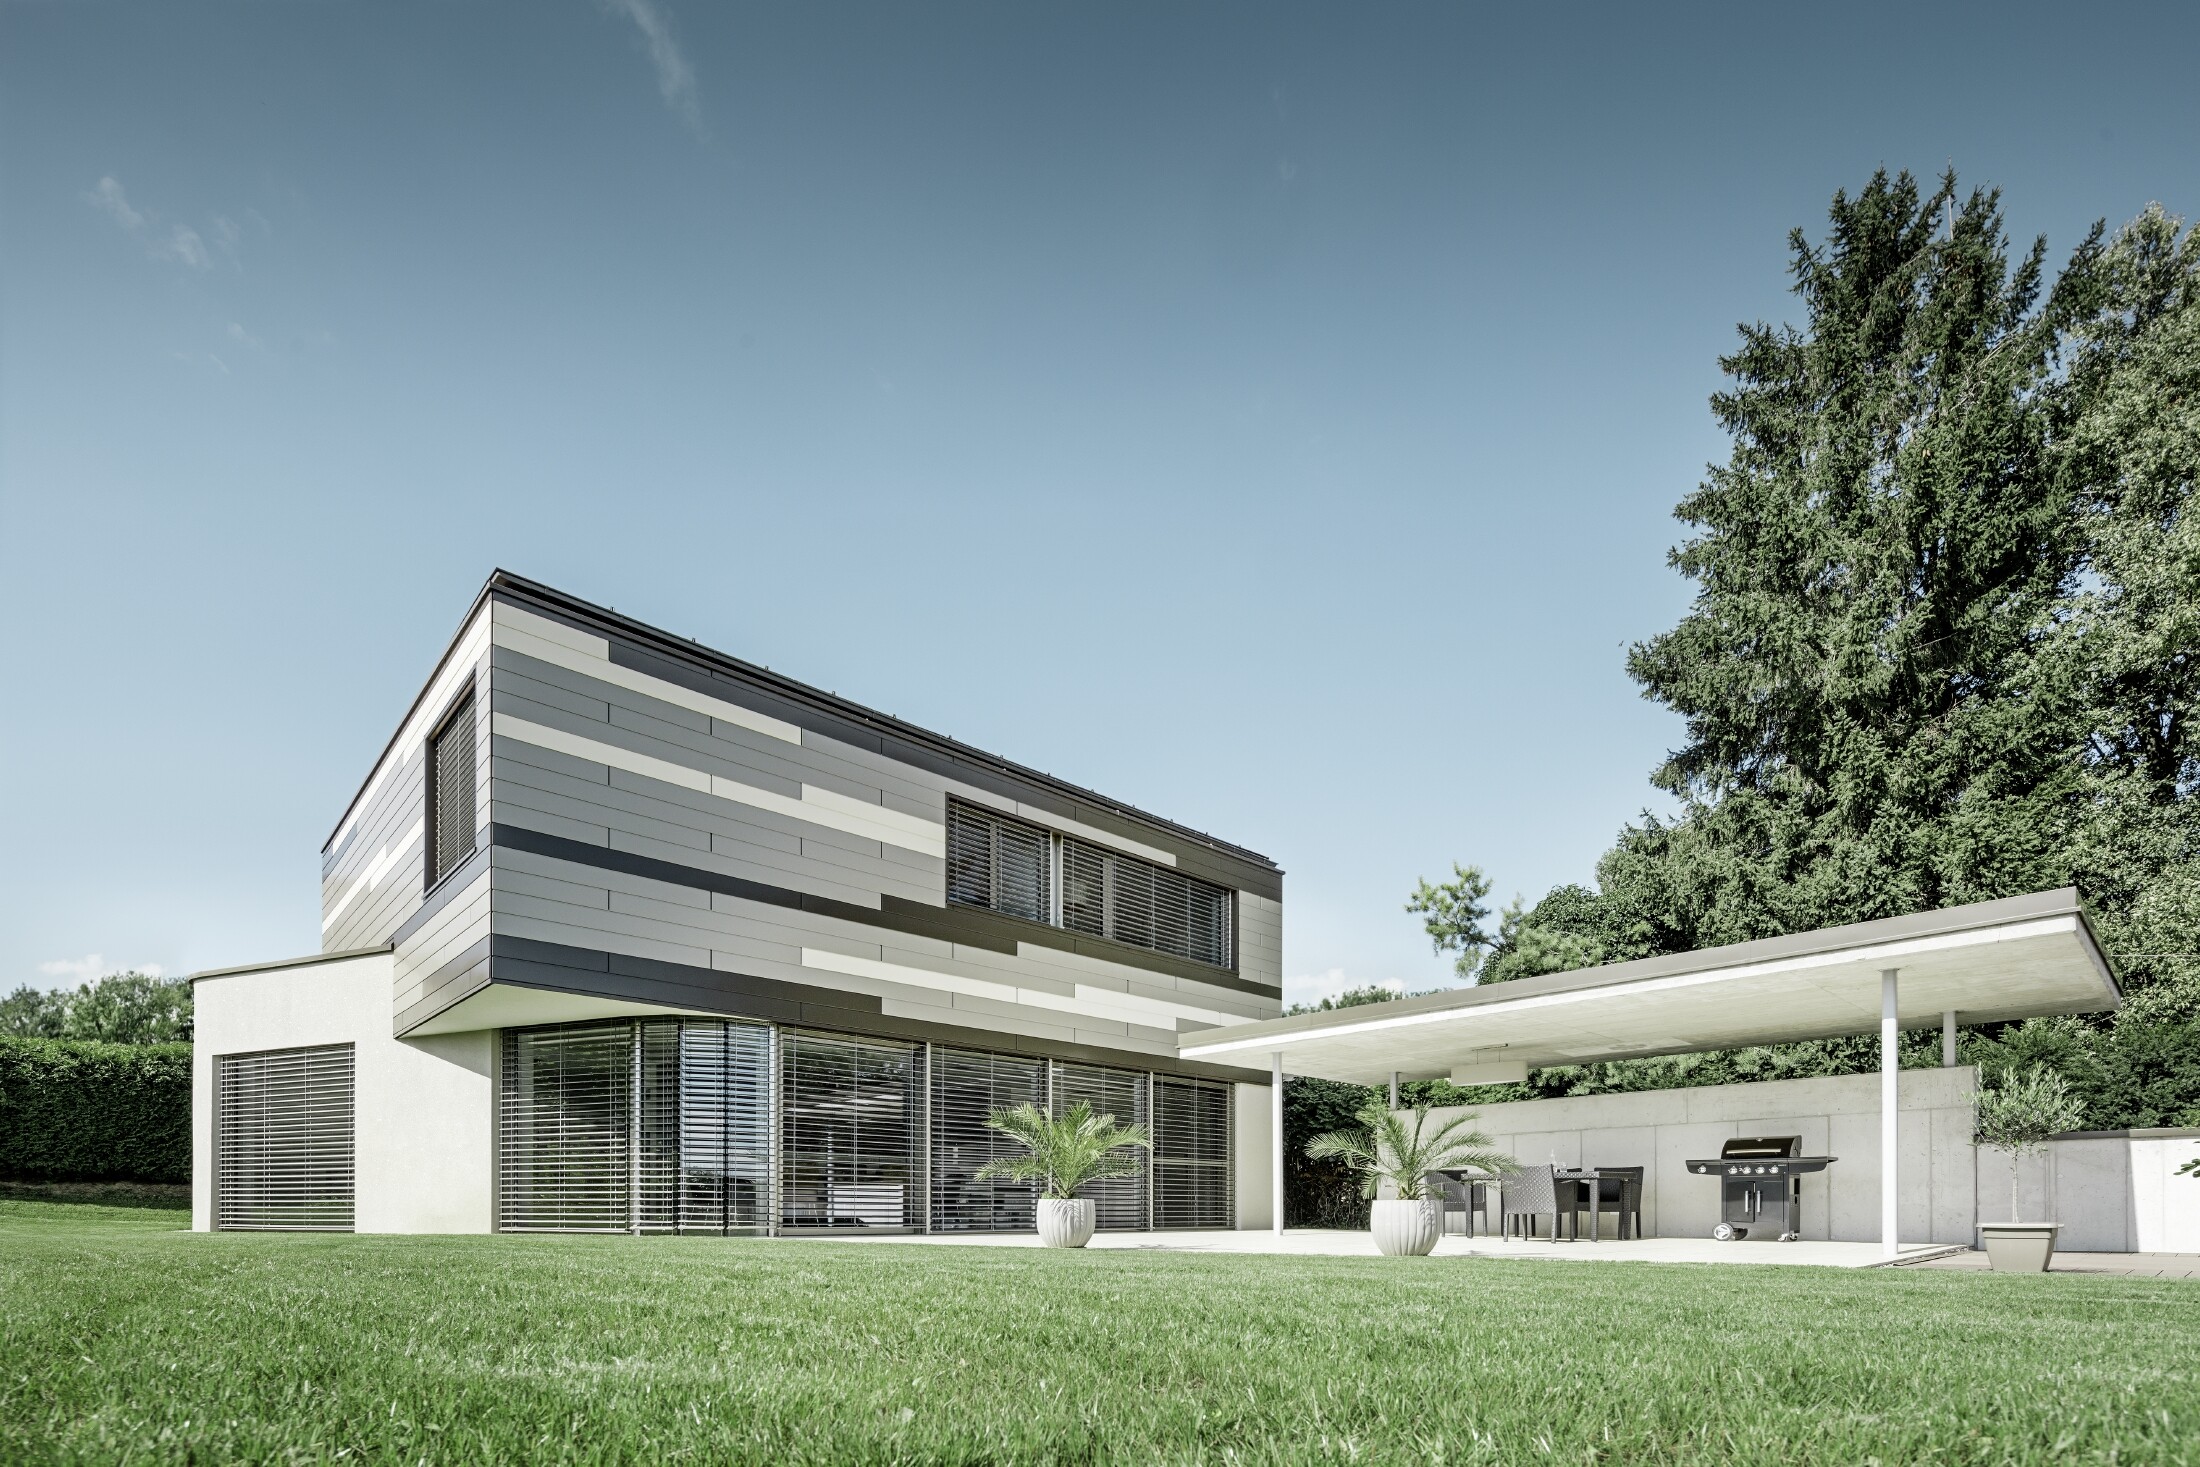 Modernes Einfamilienhaus mit Flachdach und überdachter Terrasse mit einer individuell gestalteten Aluminiumfassade aus Sidings in braun, bronze und elfenbein von PREFA